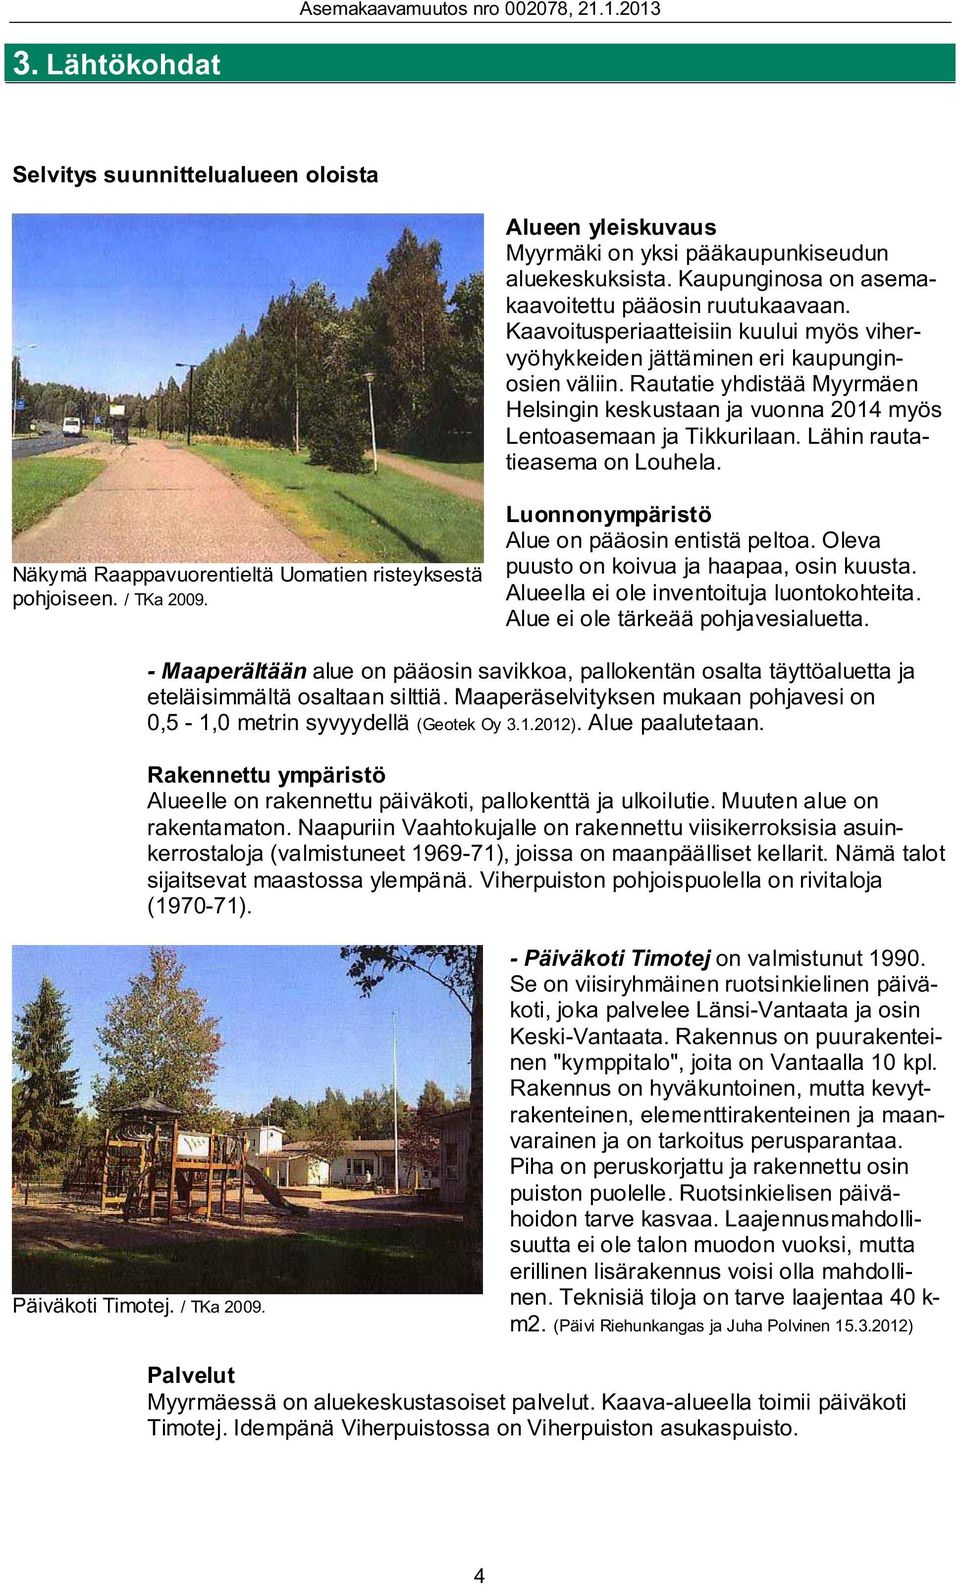 Lähin rautatieasema on Louhela. Näkymä Raappavuorentieltä Uomatien risteyksestä pohjoiseen. / TKa 2009. Luonnonympäristö Alue on pääosin entistä peltoa. Oleva puusto on koivua ja haapaa, osin kuusta.